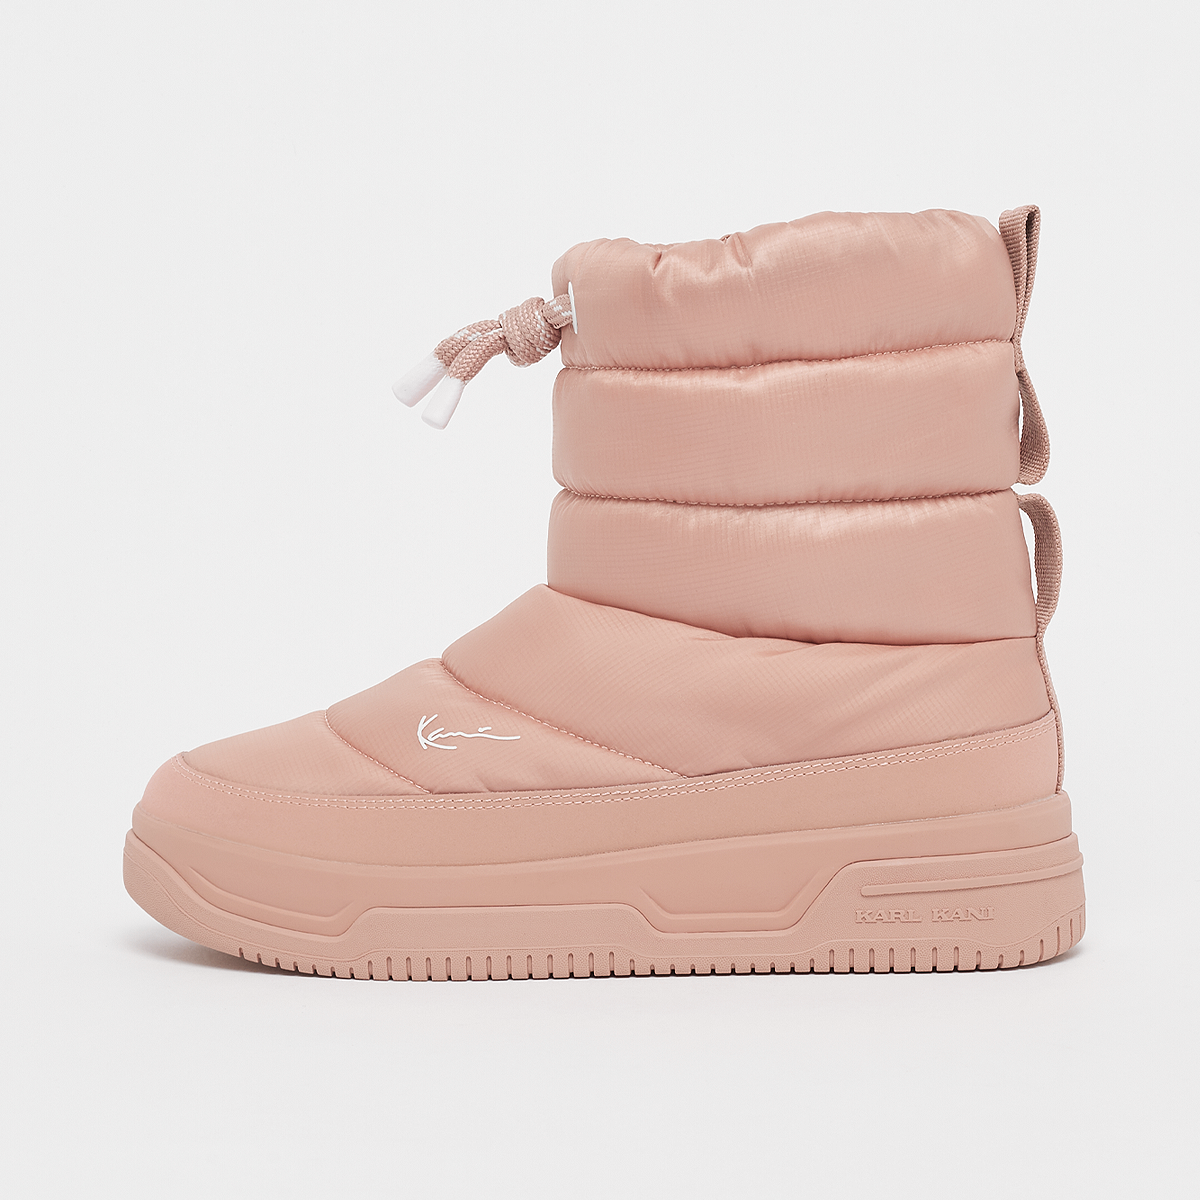 pillow boot, karl kani, footwear, pink, taille: 40